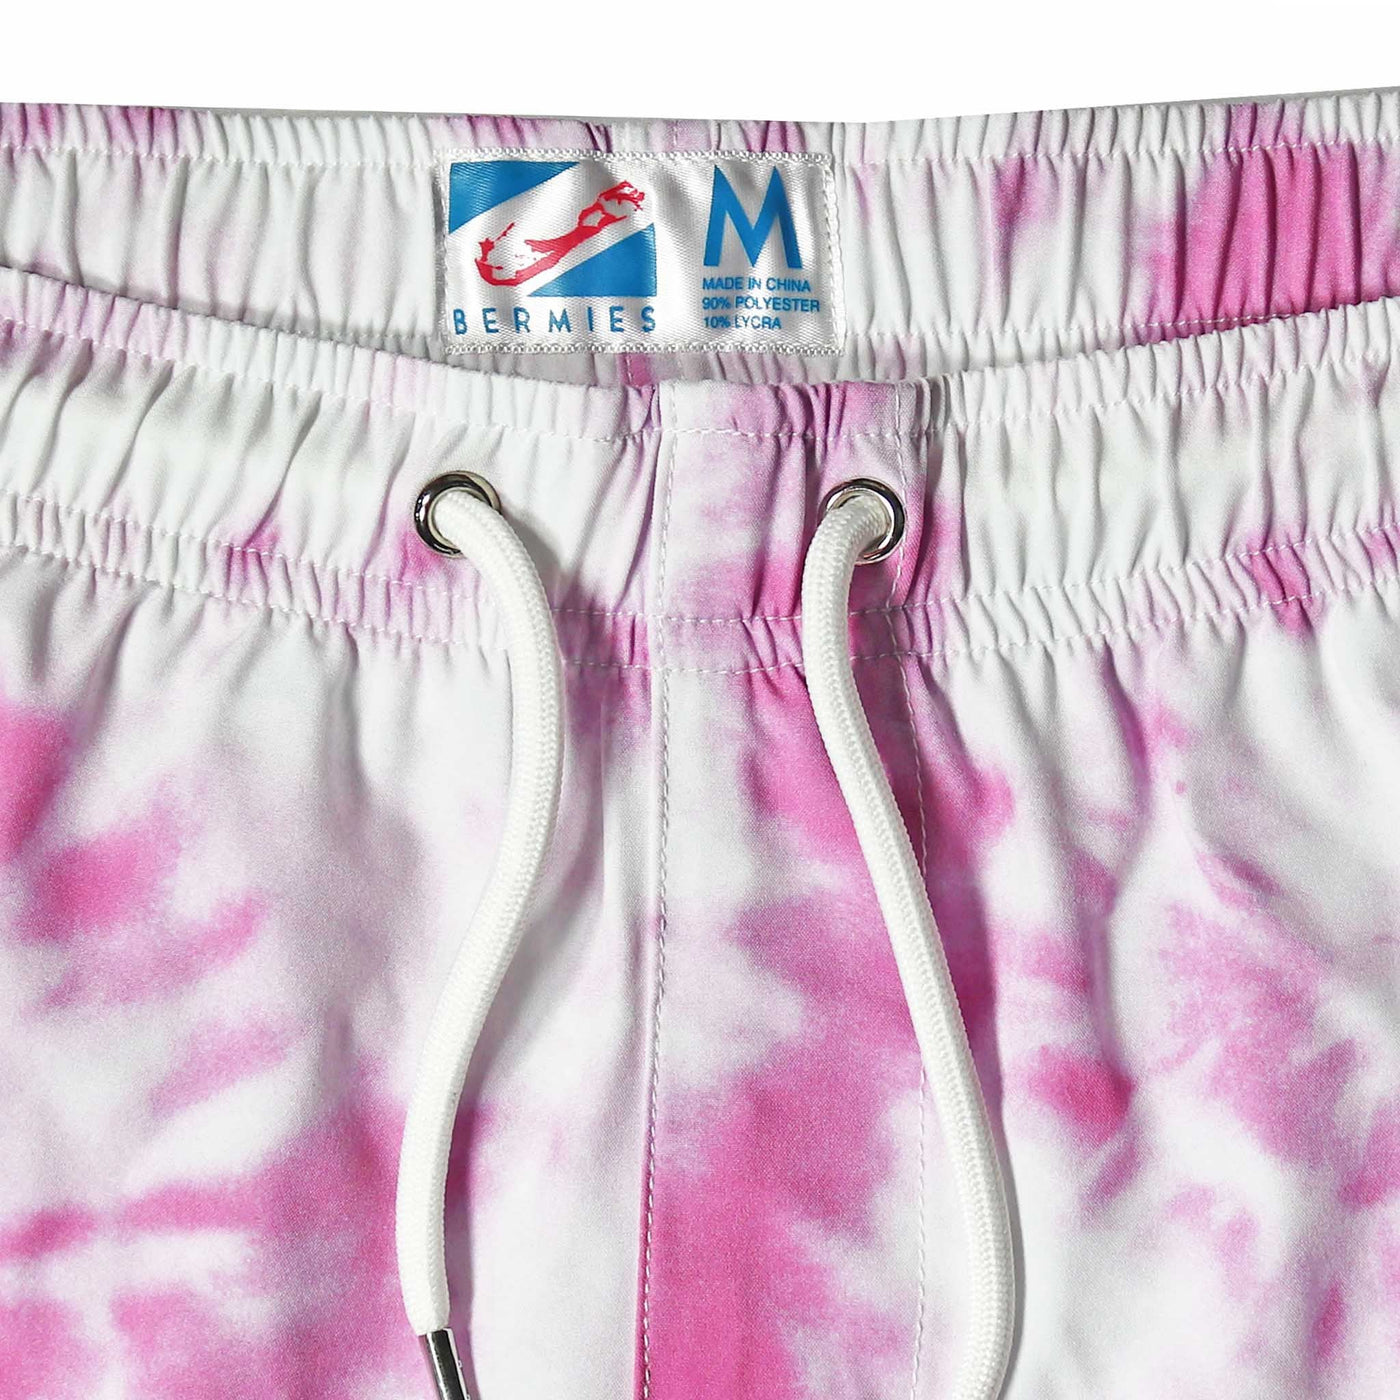 Purple Tie Dye - 5" Swim Trunks by Bermies Swimwear